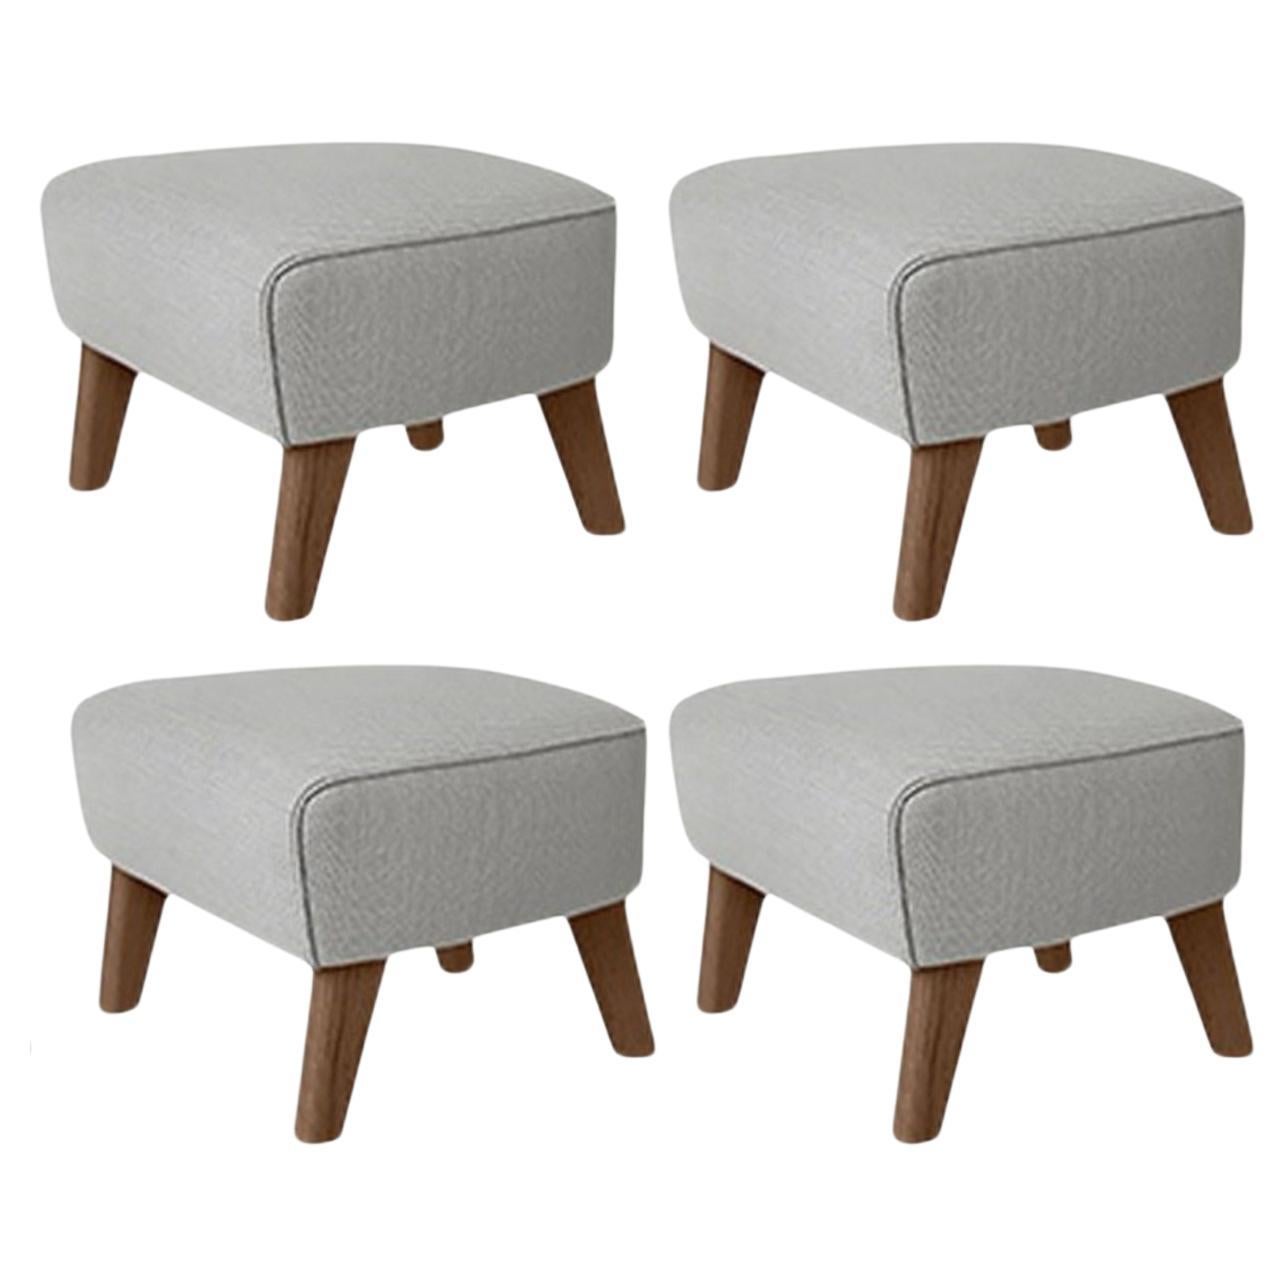 RafSimonsVidar3 ensemble de 4 tabourets de chaise en chêne gris clair, « My Own Chair » par Lassen